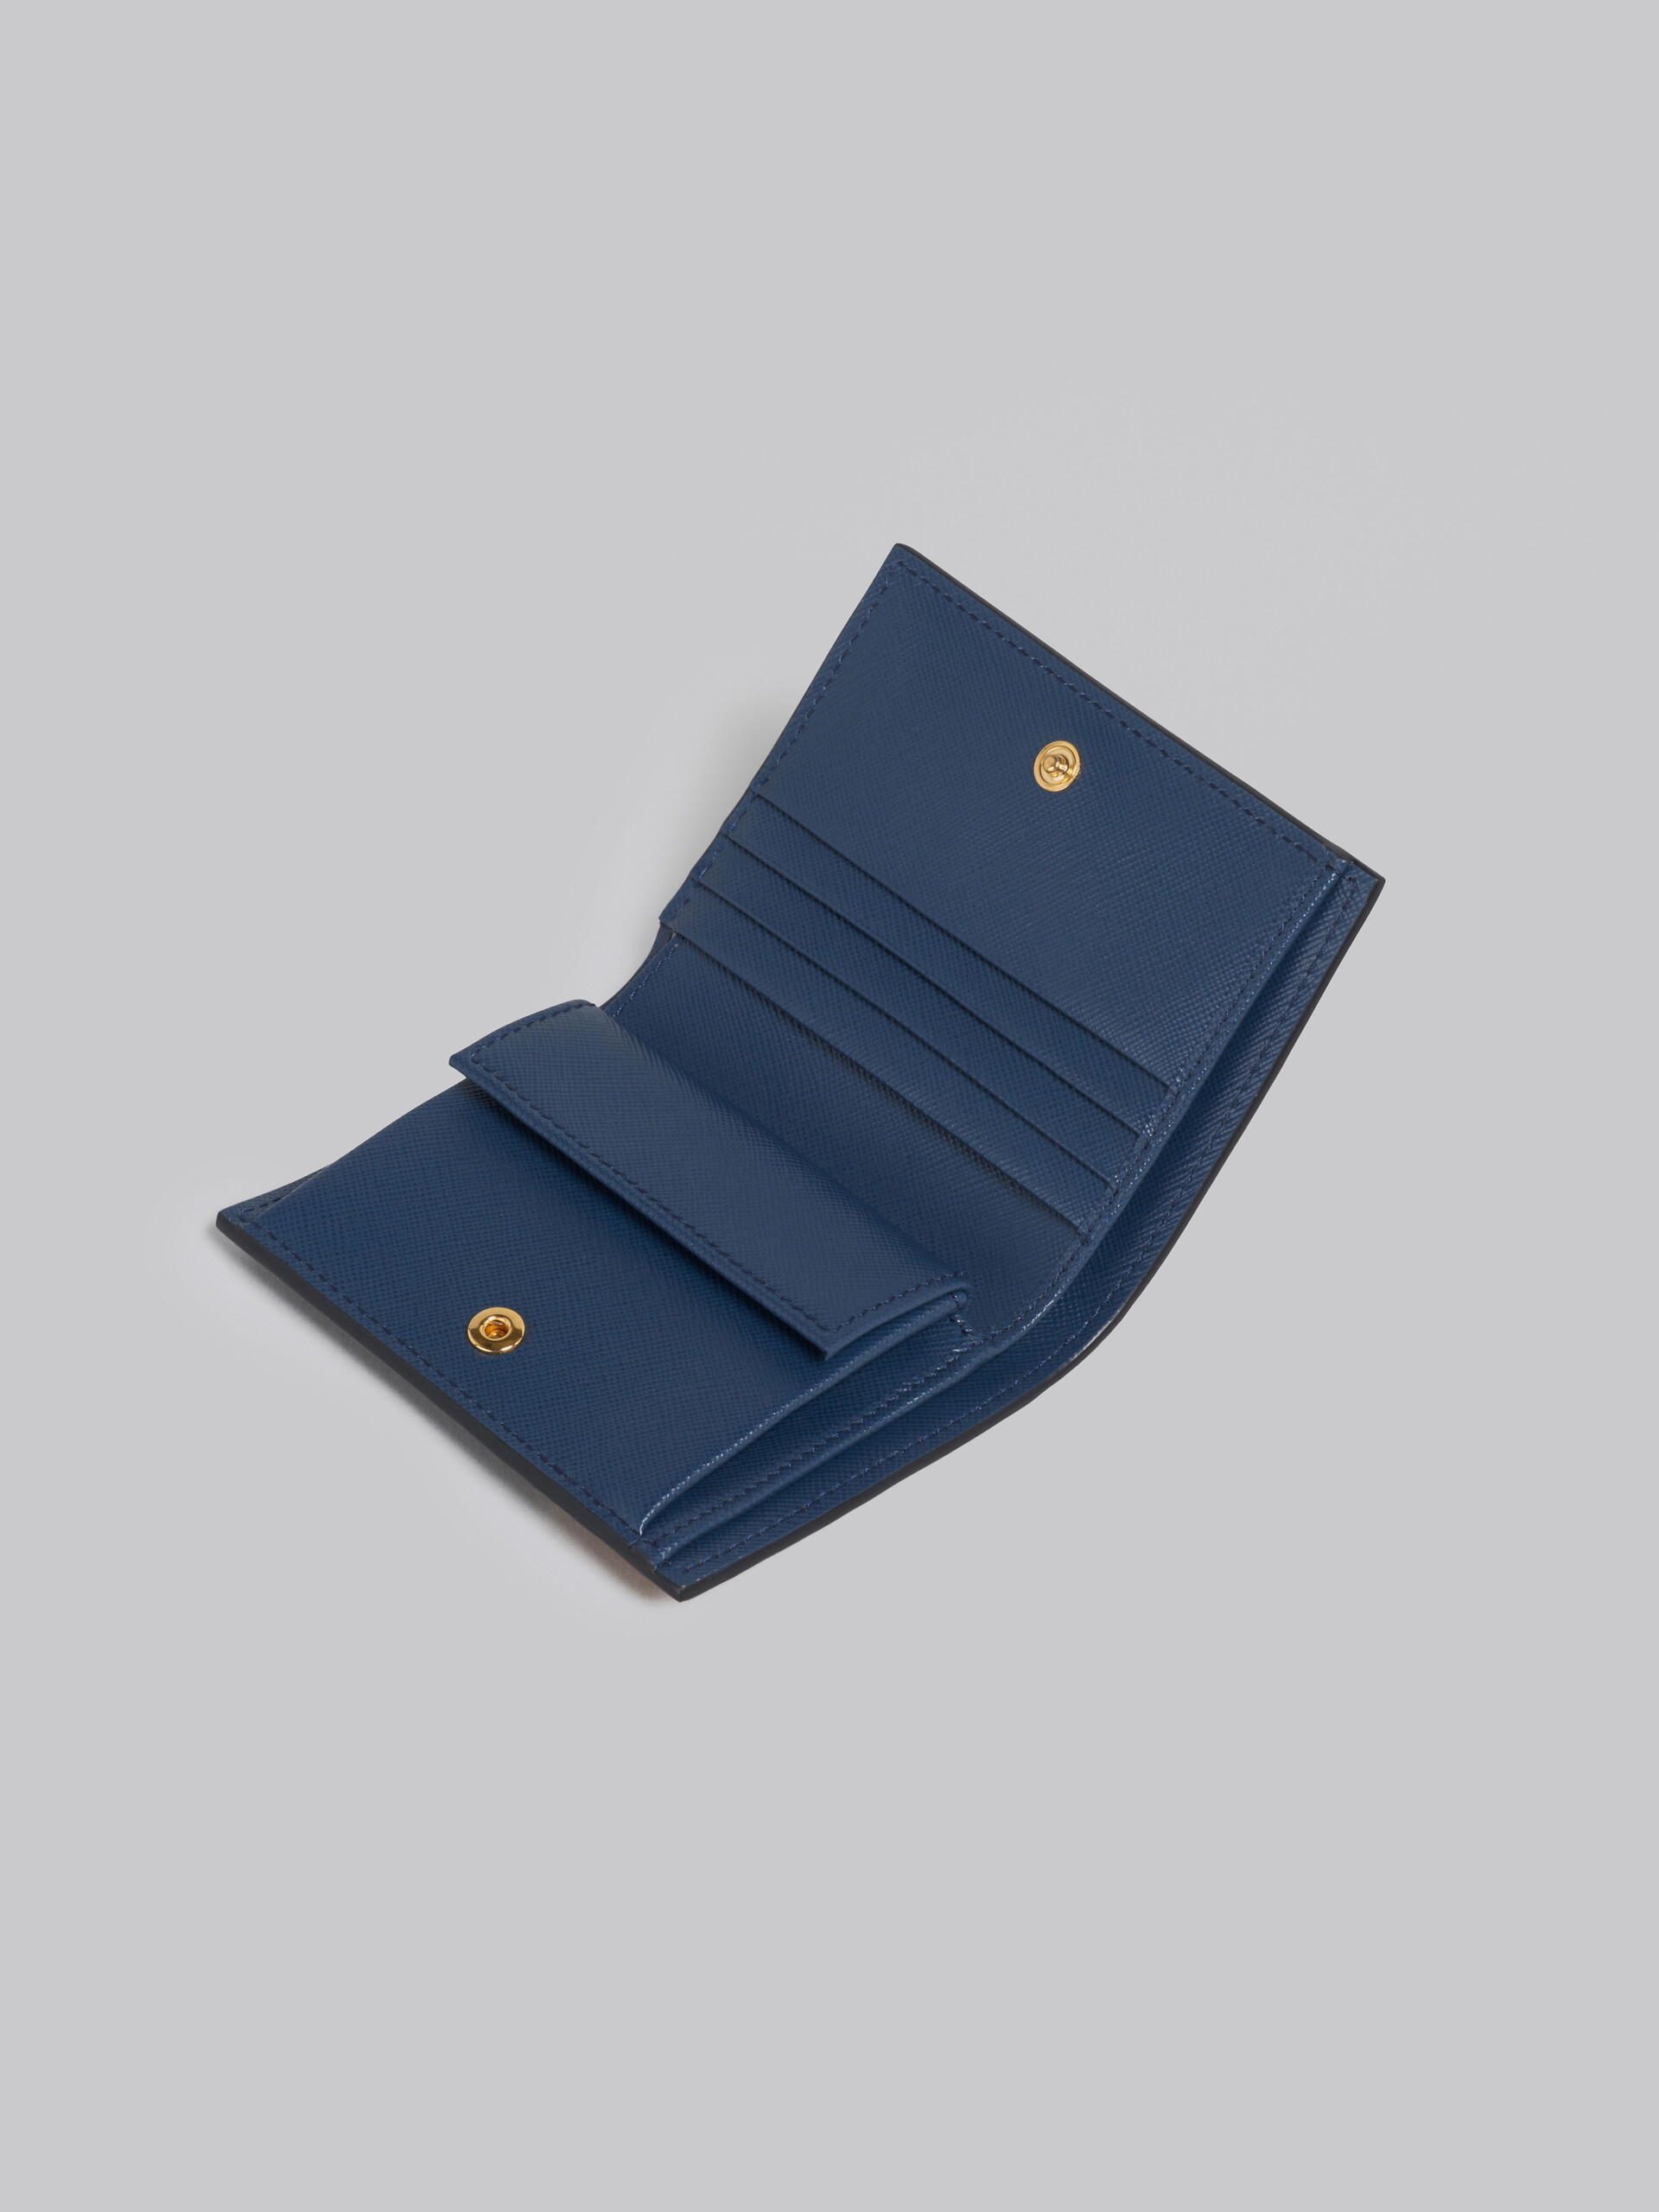 Zweiteilige Brieftasche aus orangefarbenem, rosafarbenem und blauem Saffiano-Kalbsleder - Brieftaschen - Image 4